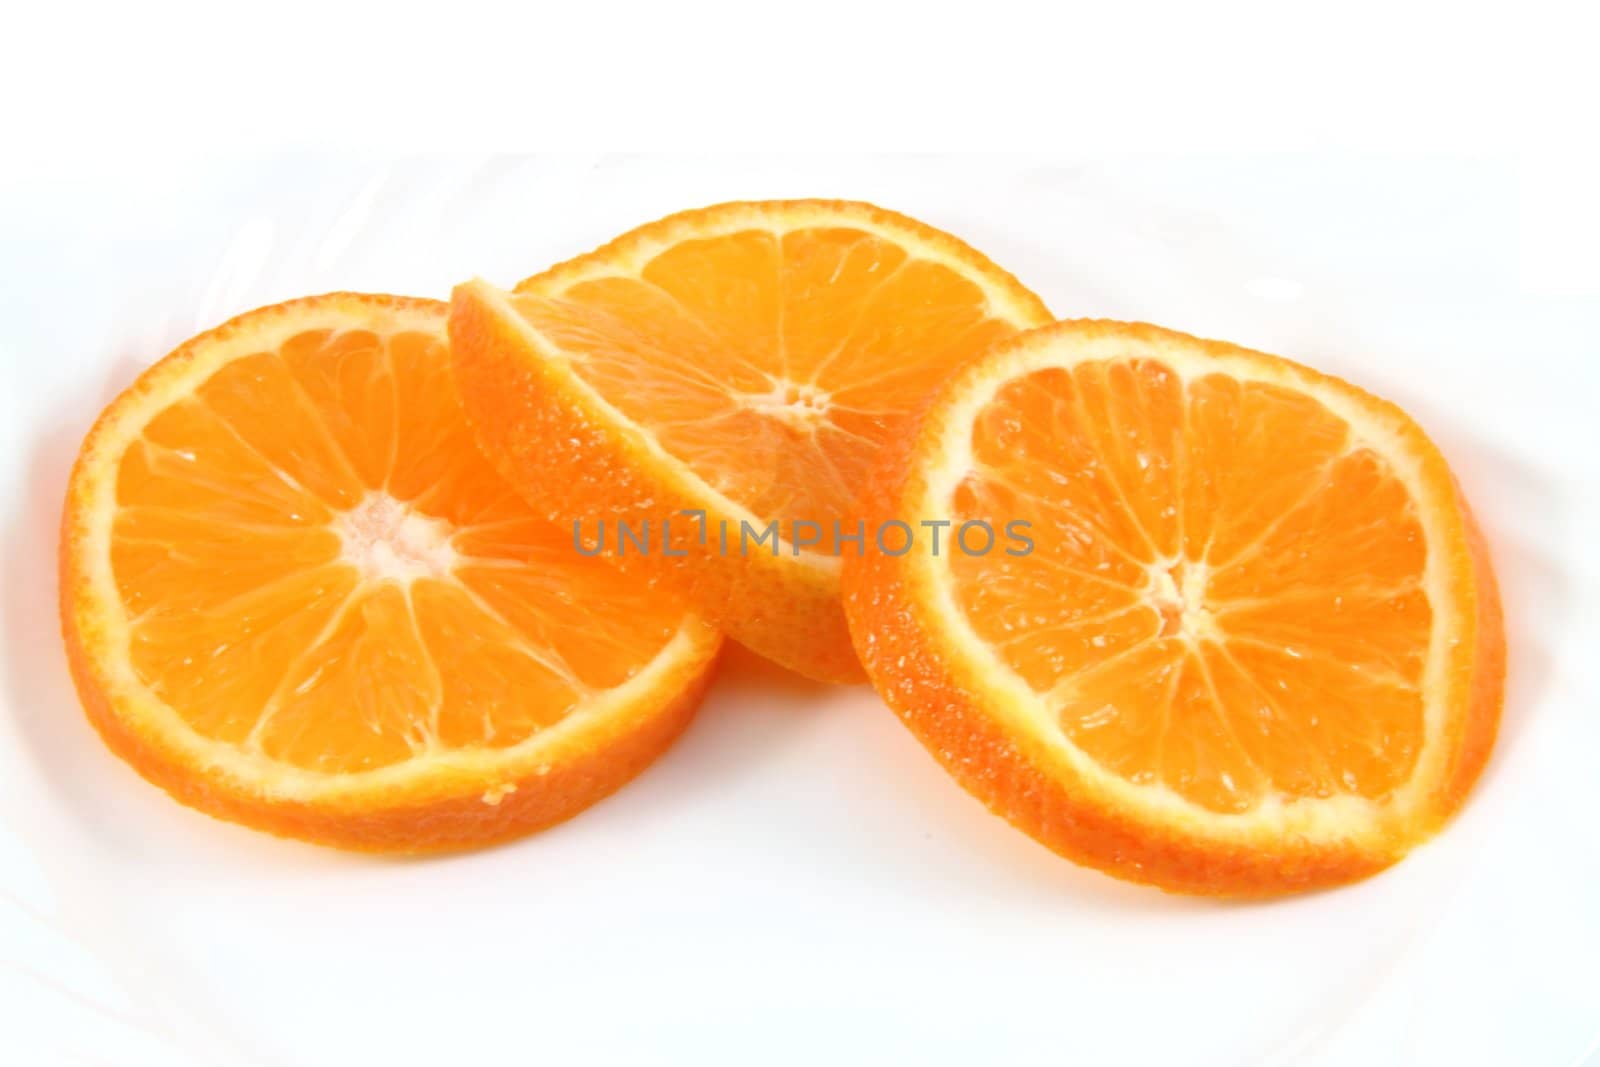 Fresh orange slices isolated on white.
